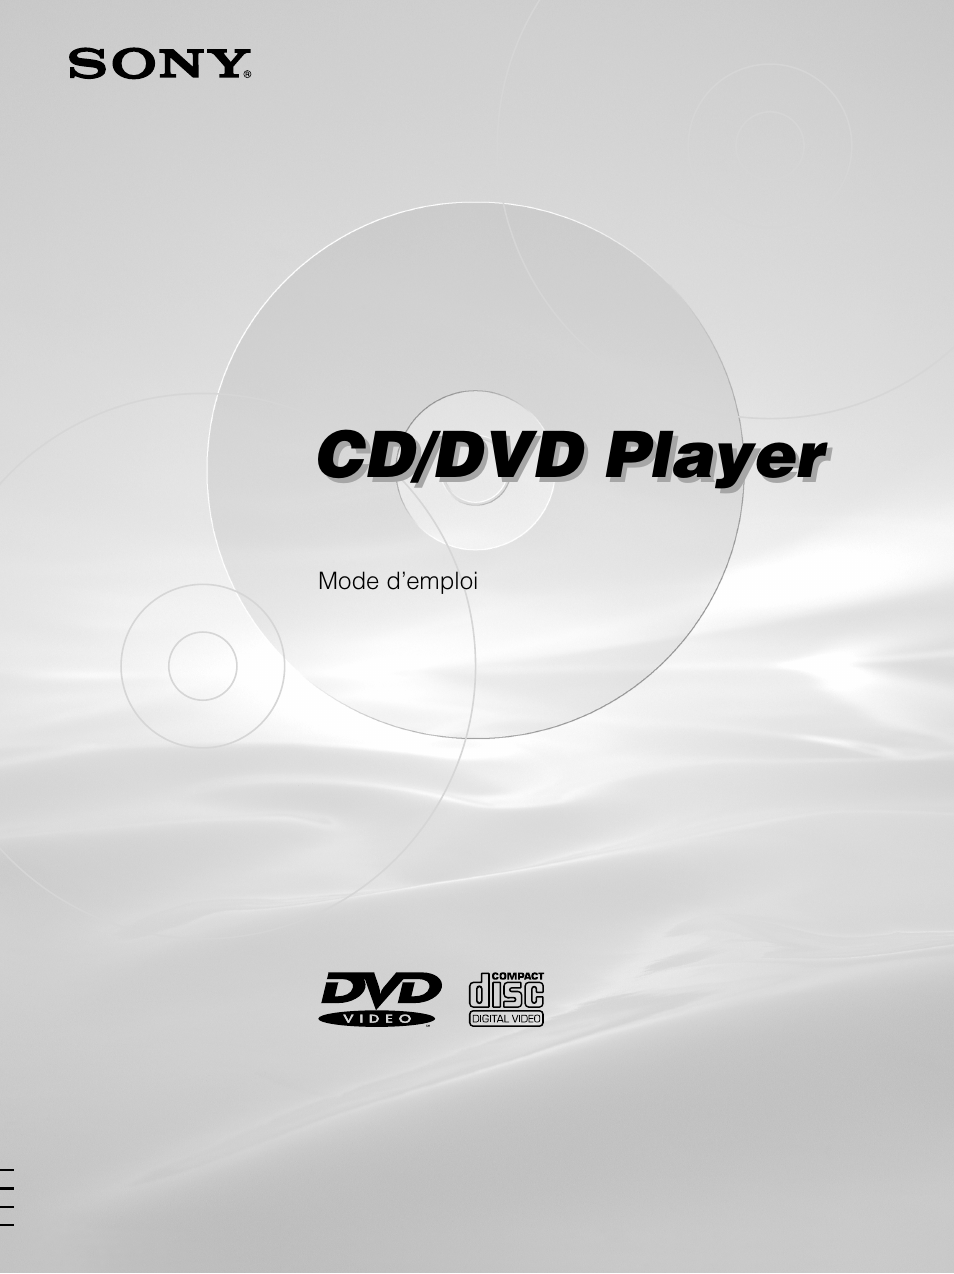 Lecteur DVD SONY DVP-S335 CD DVD Vidéo Virtual Surround avec